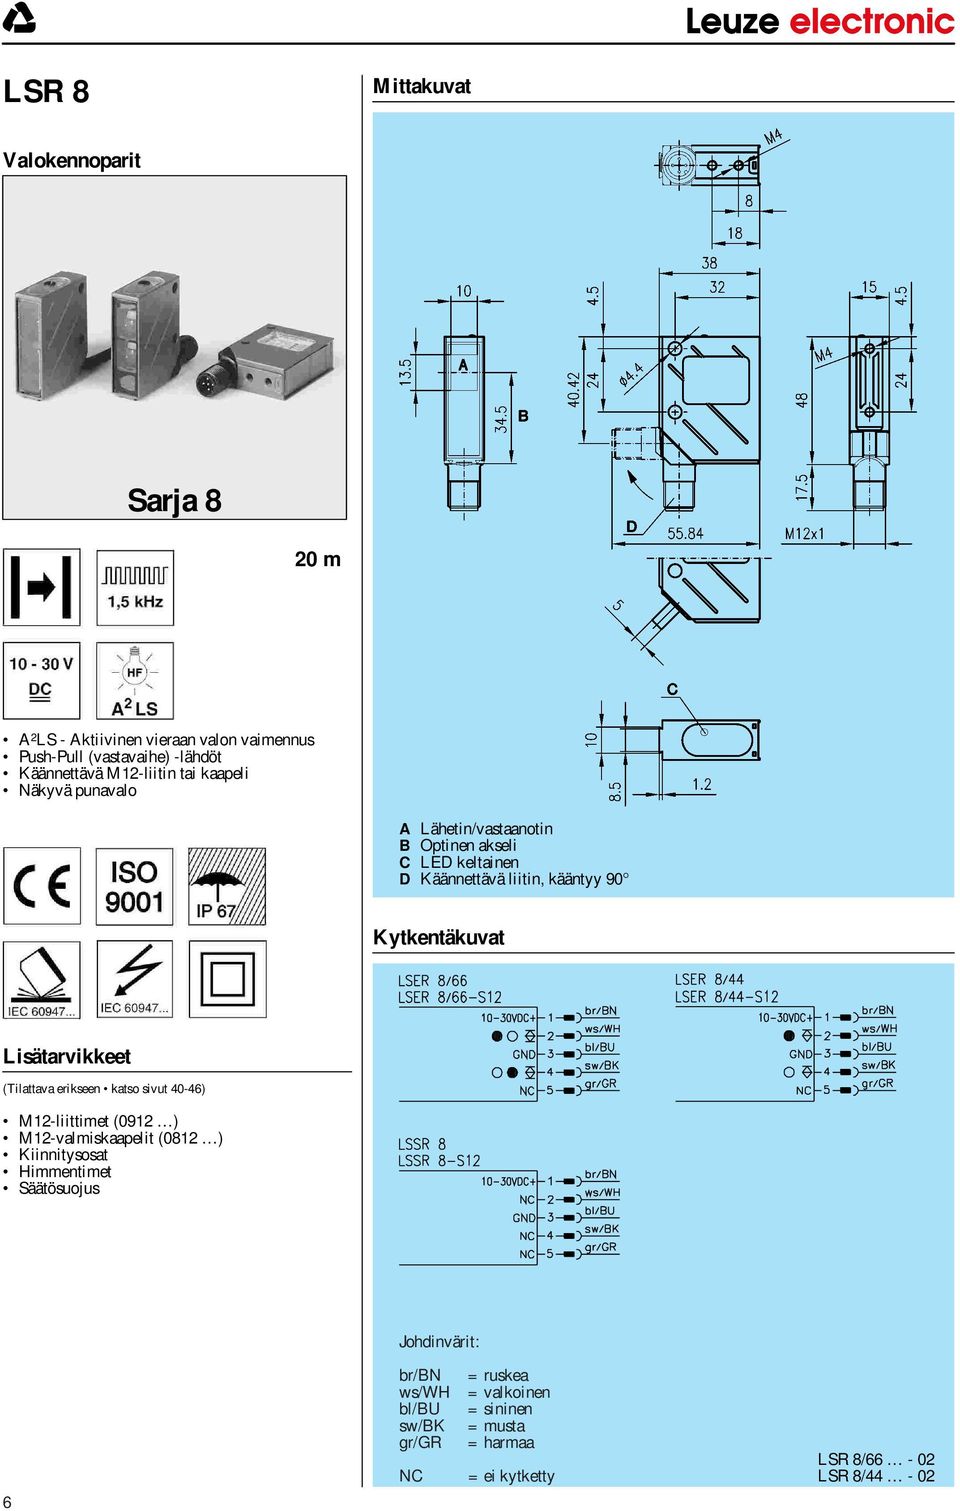 Kytkentäkuvat Lisätarvikkeet (Tilattava erikseen katso sivut 40-46) M12-liittimet (0912 ) M12-valmiskaapelit (0812 ) Kiinnitysosat